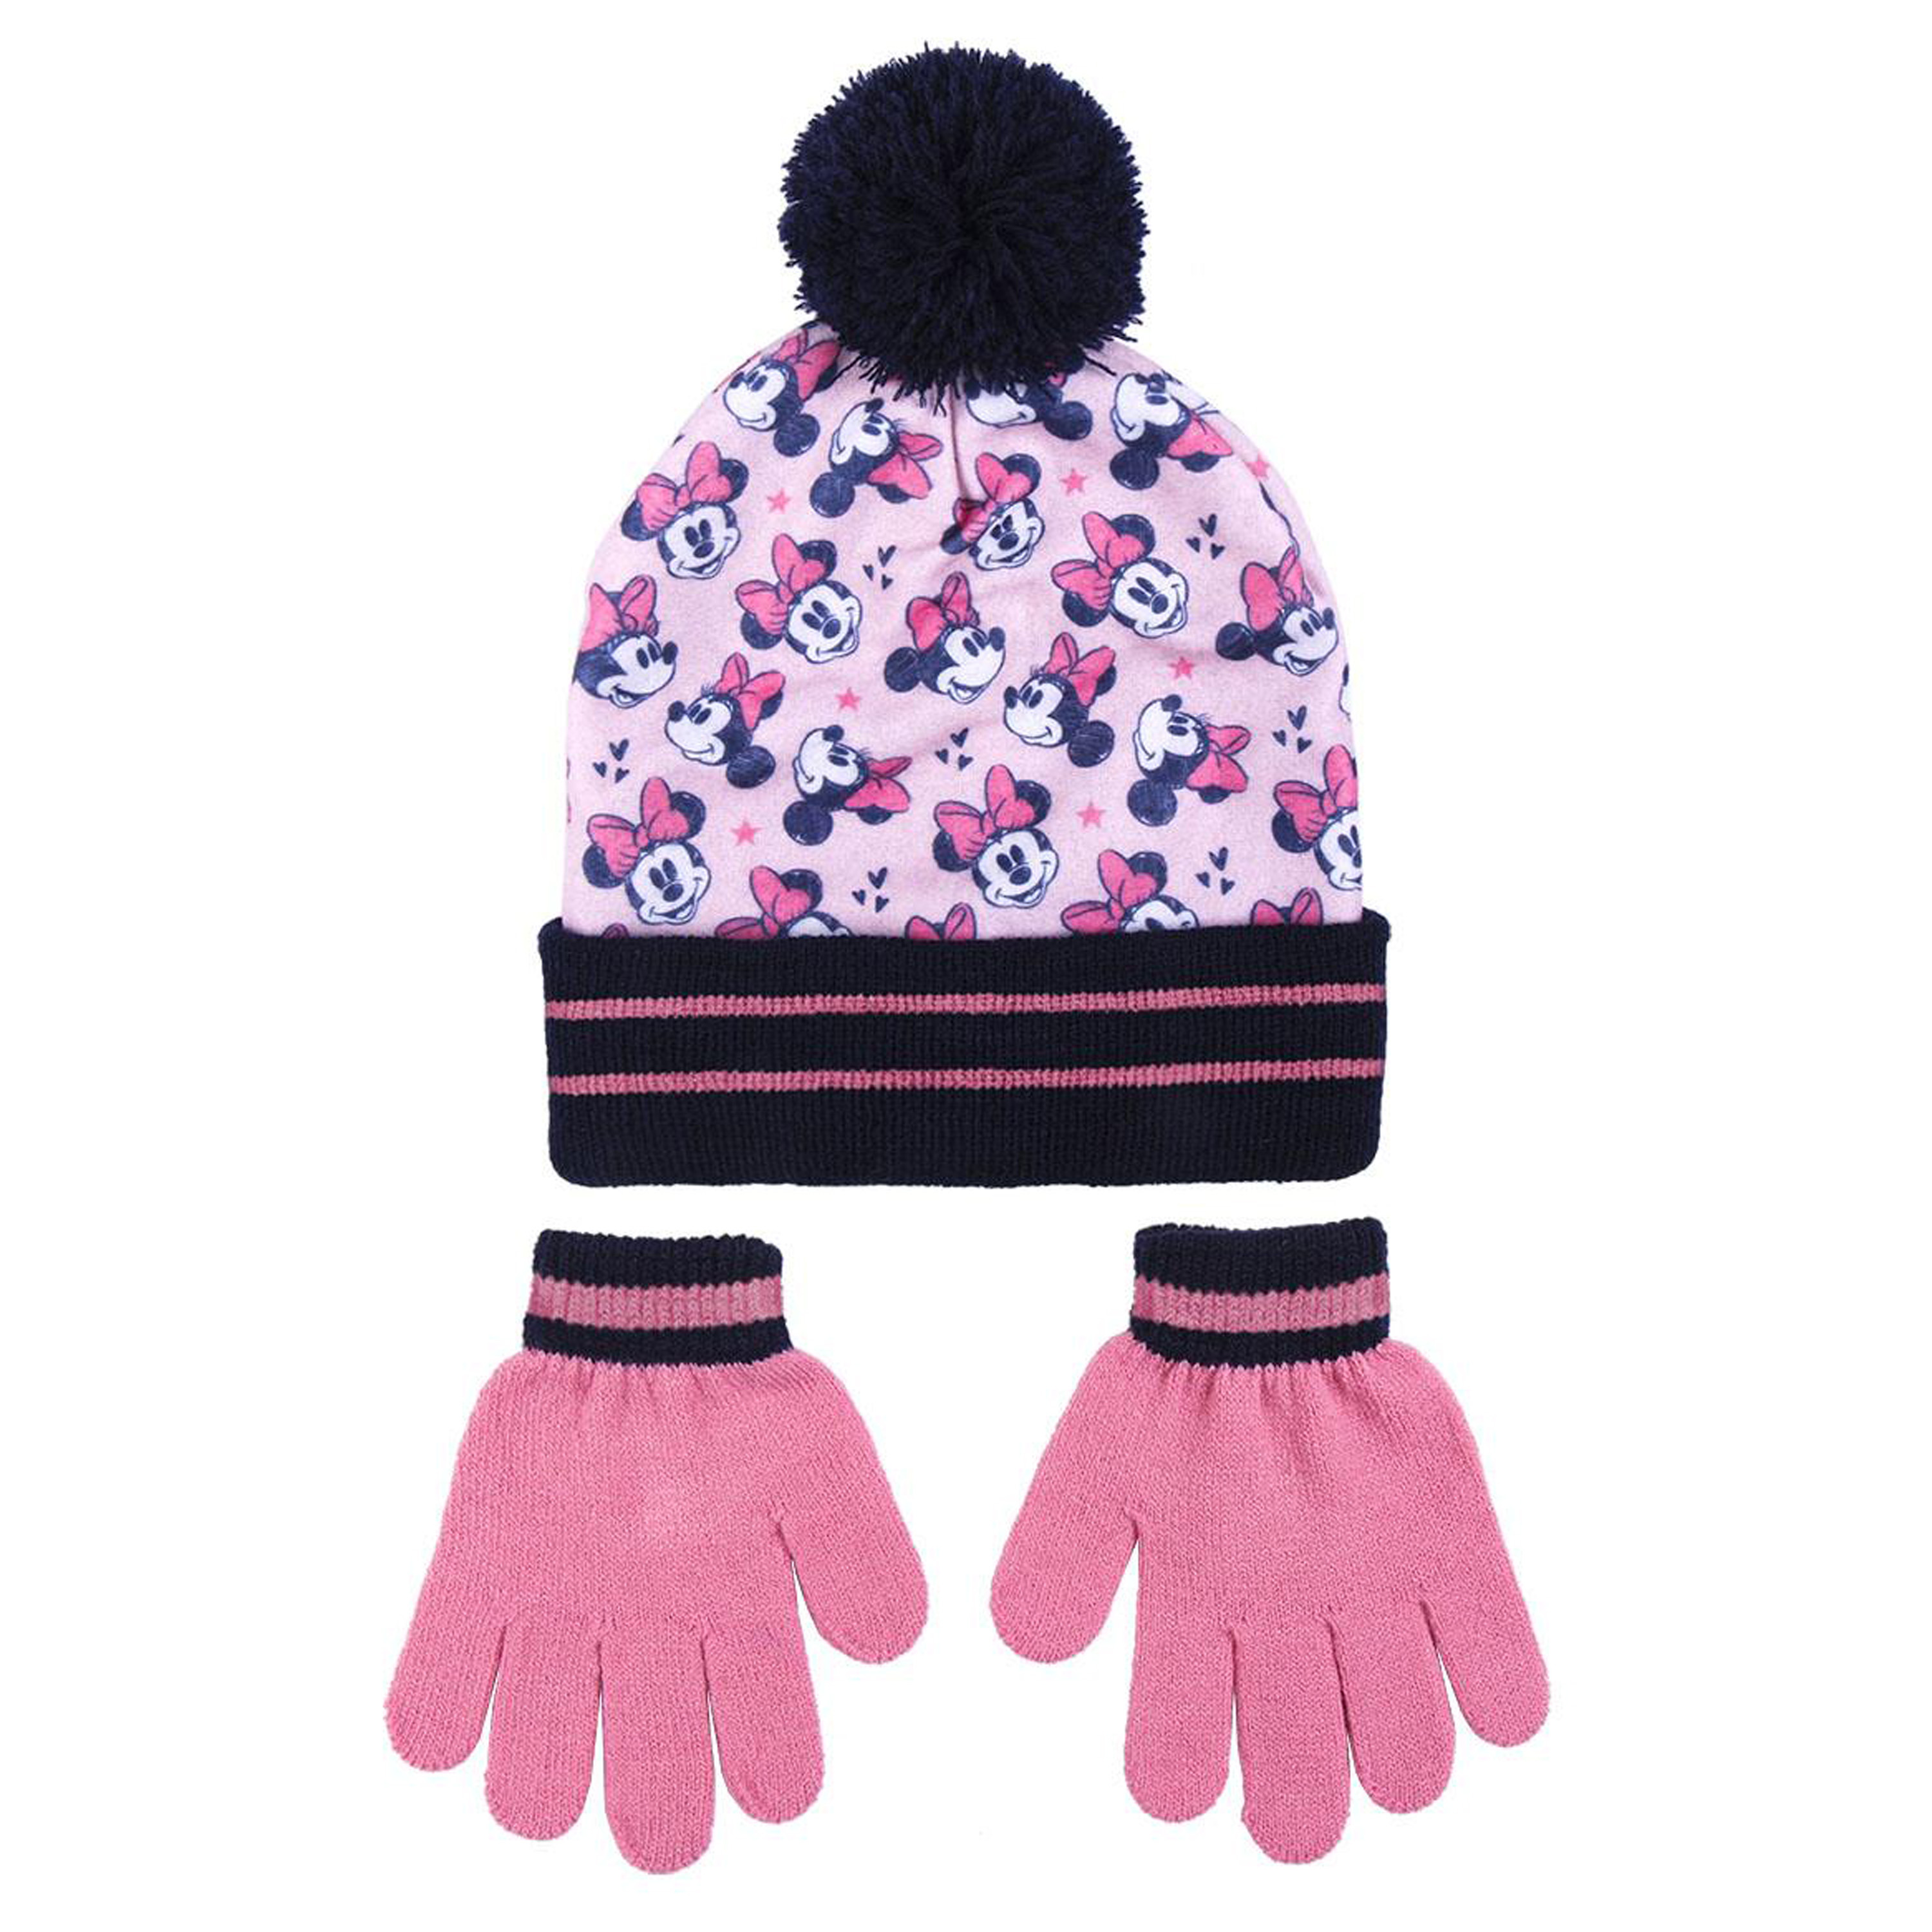 Disney Minnie Mouse 2-delig winterset muts-handschoenen roze-zwart voor kinderen